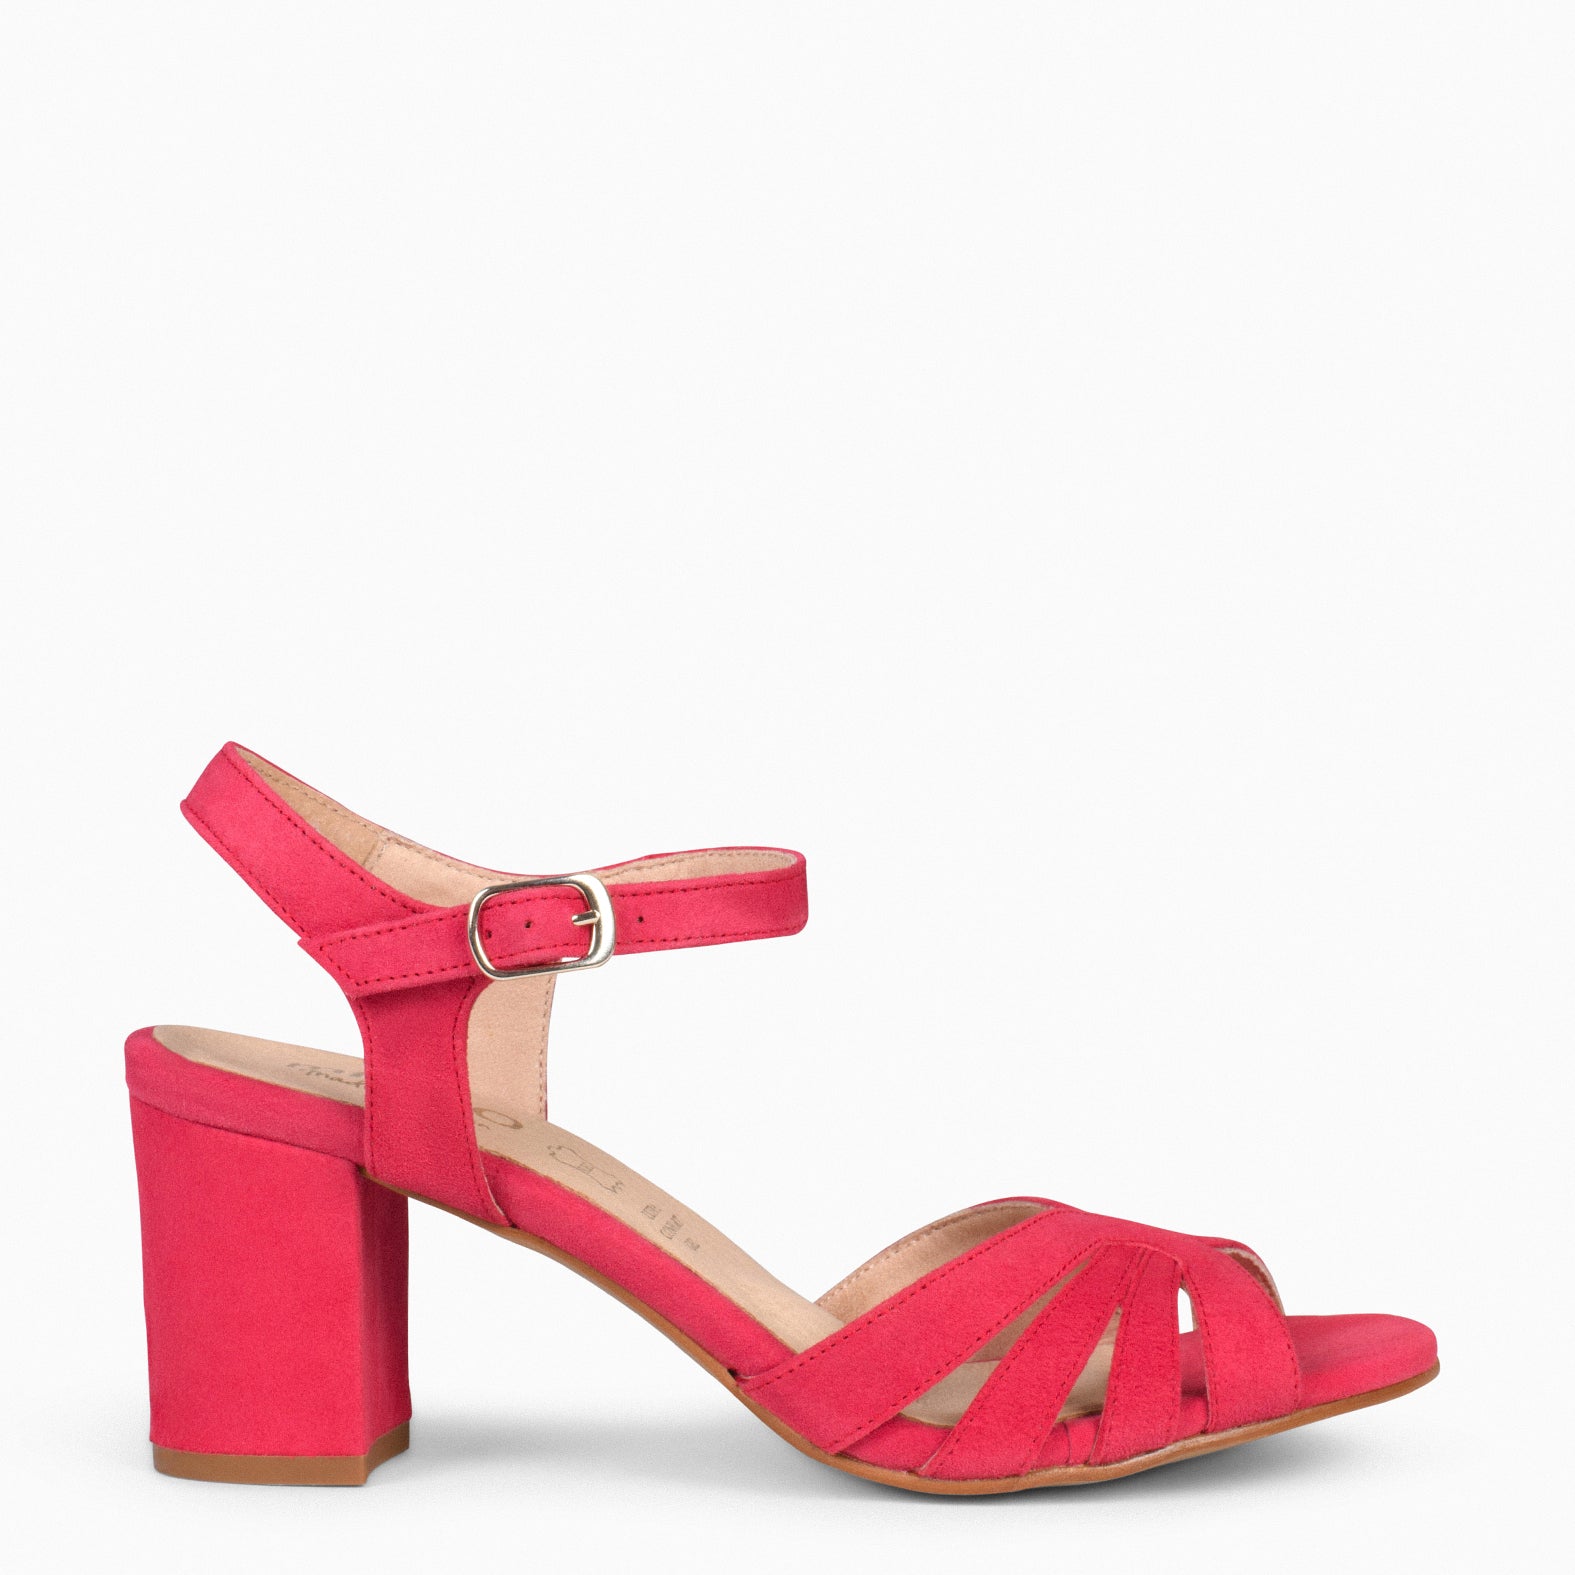 MUSE – RED block heel sandals